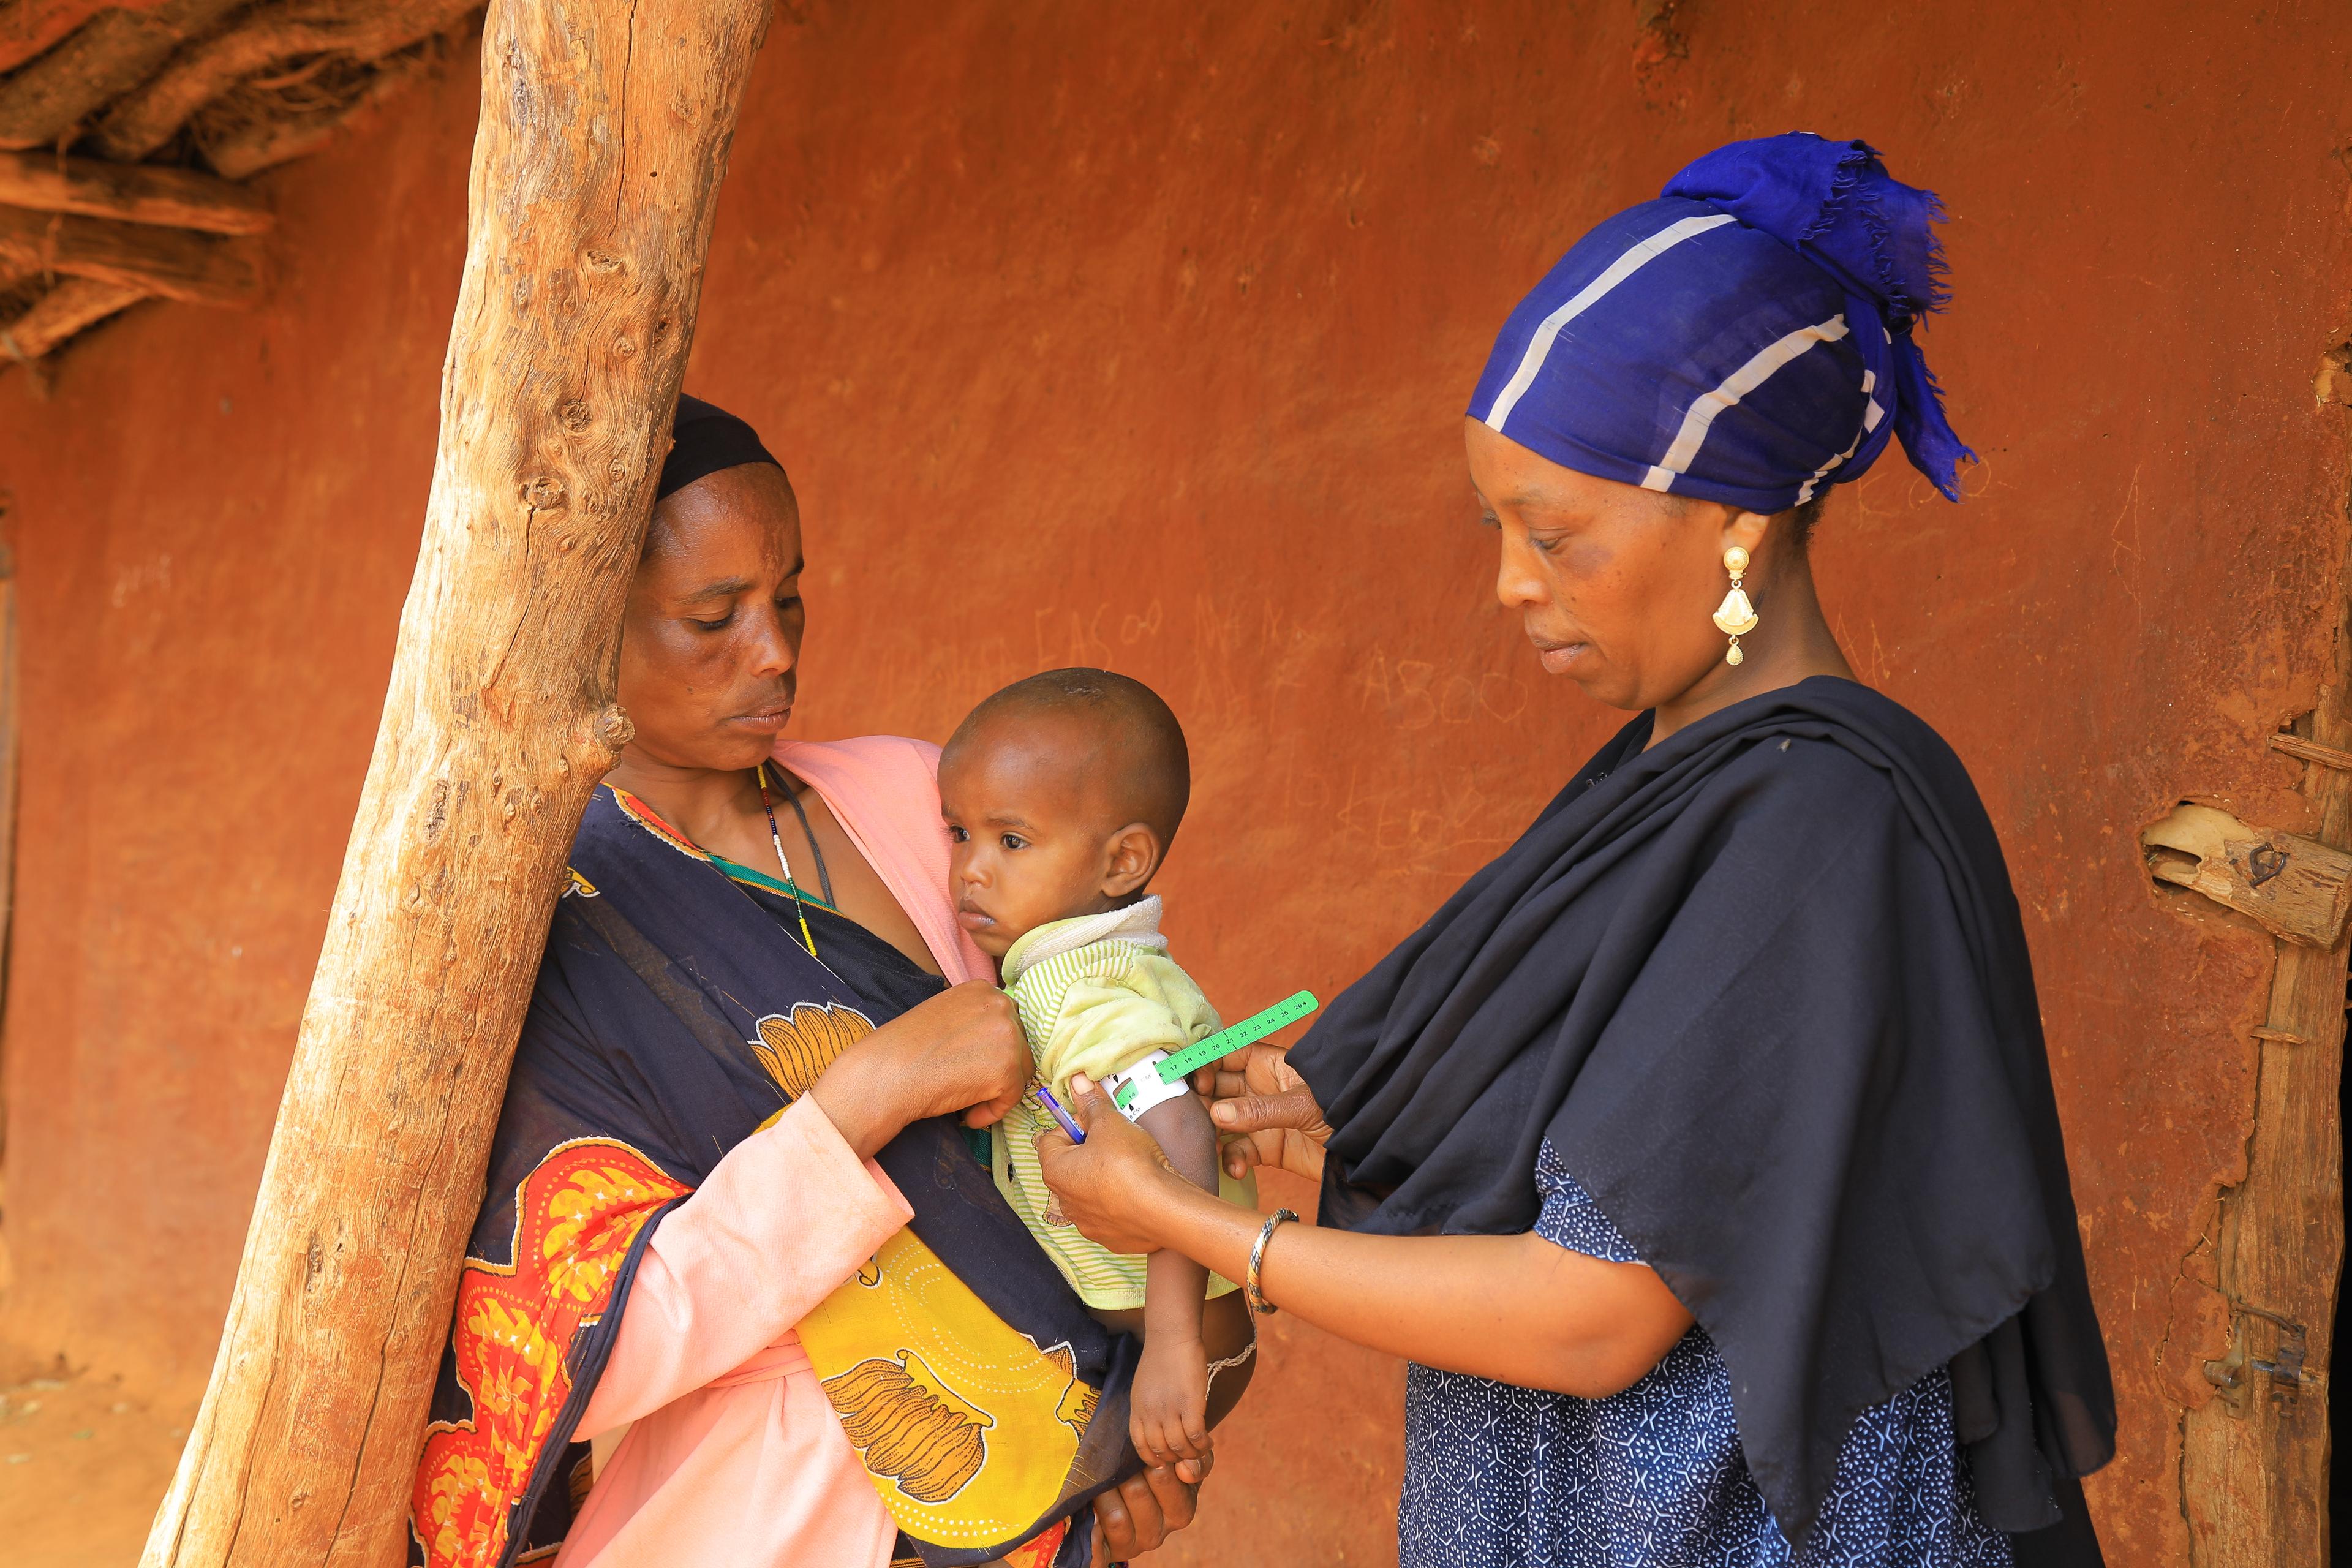 Deux femmes se font face devant une maison en torchis. Celle de gauche porte un bébé dans une écharpe colorée, tandis que celle de droite, vêtue d’une robe et d’un foulard bleus, mesure le tour de bras de l’enfant avec un mètre.